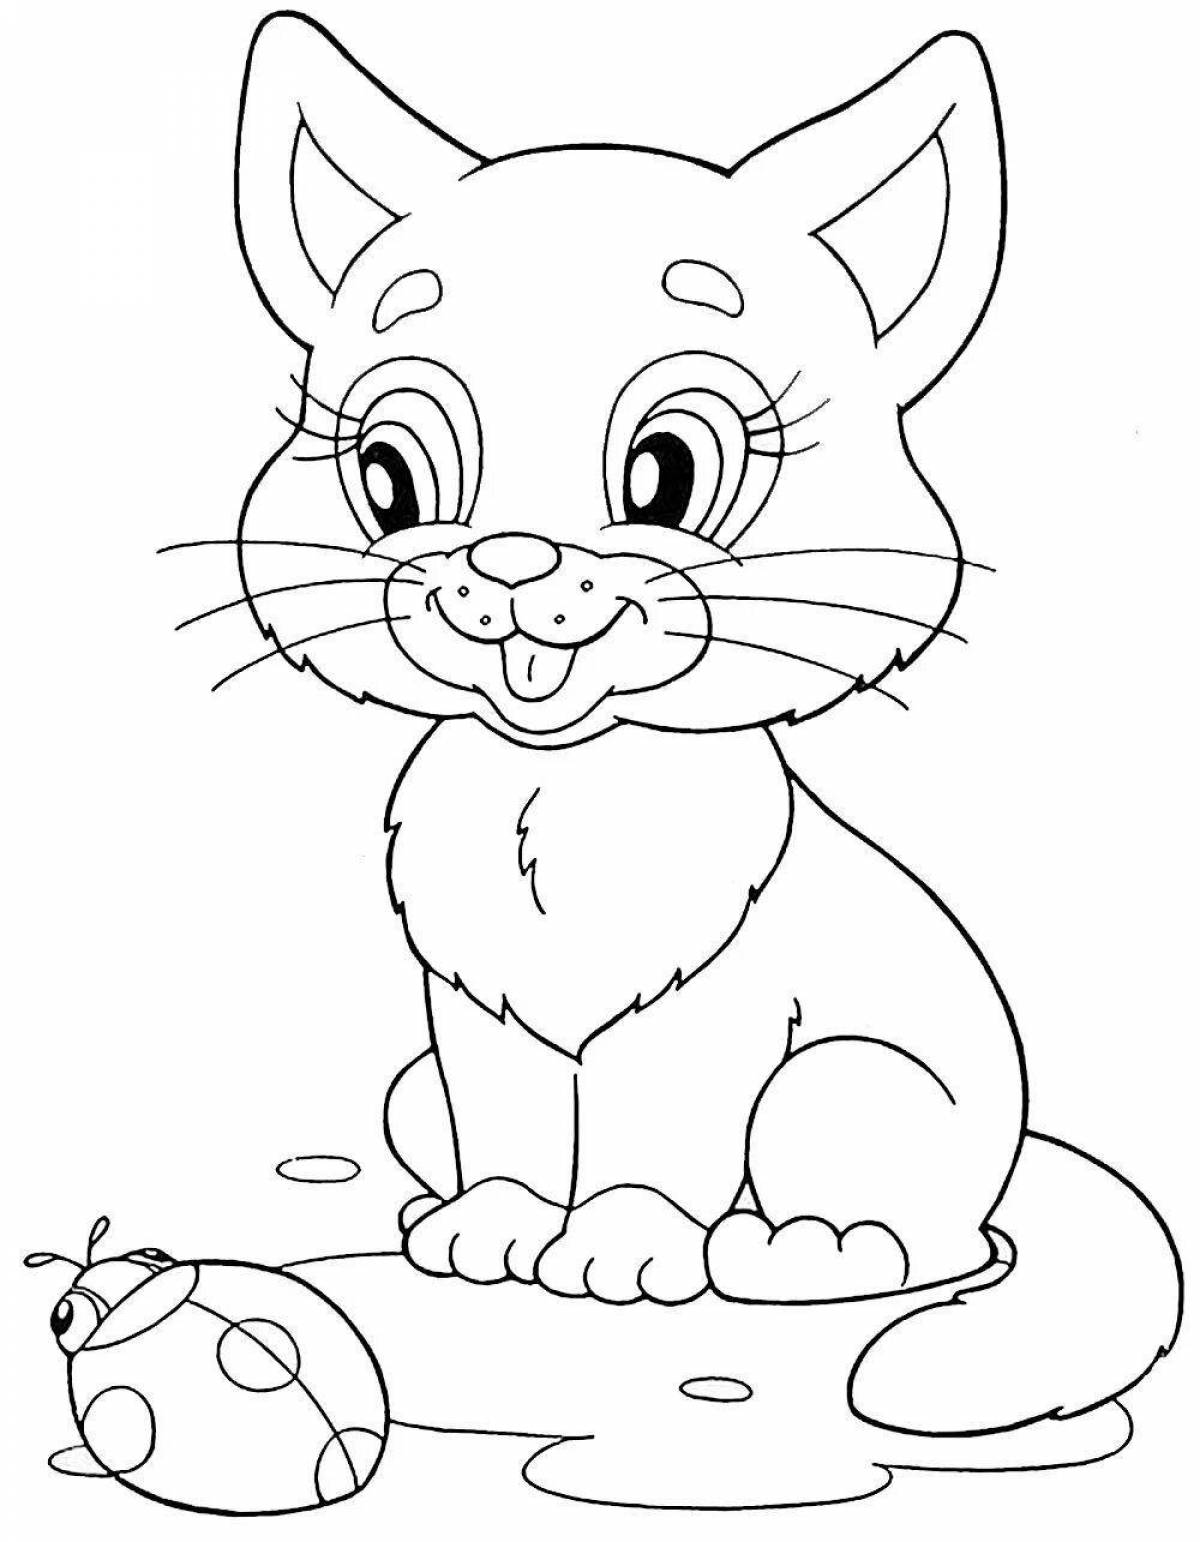 Яркая раскраска для детей 5-6 лет кошки